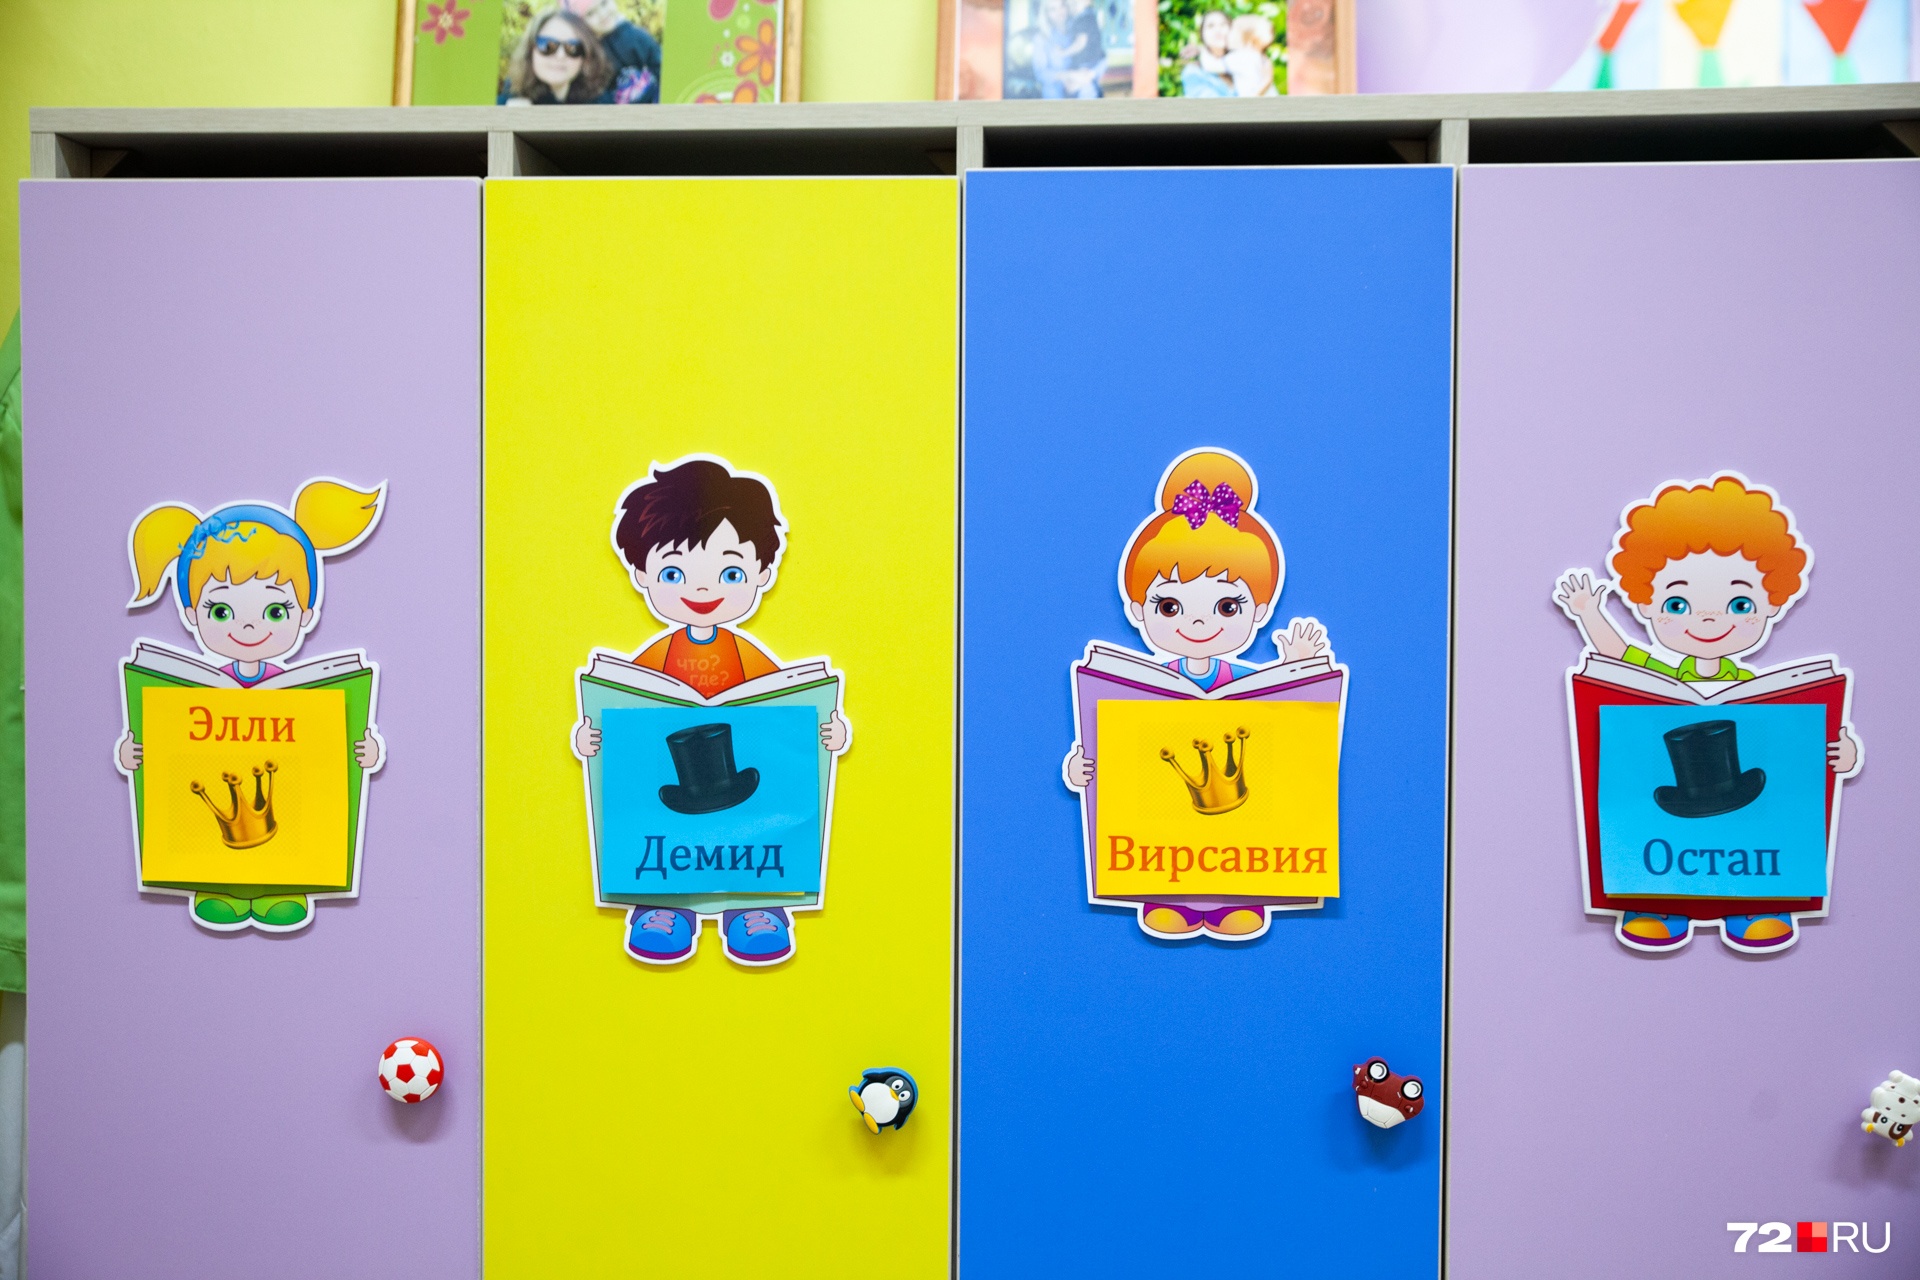 Ответы 100 к одному самый популярный рисунок на шкафчиках в детском саду